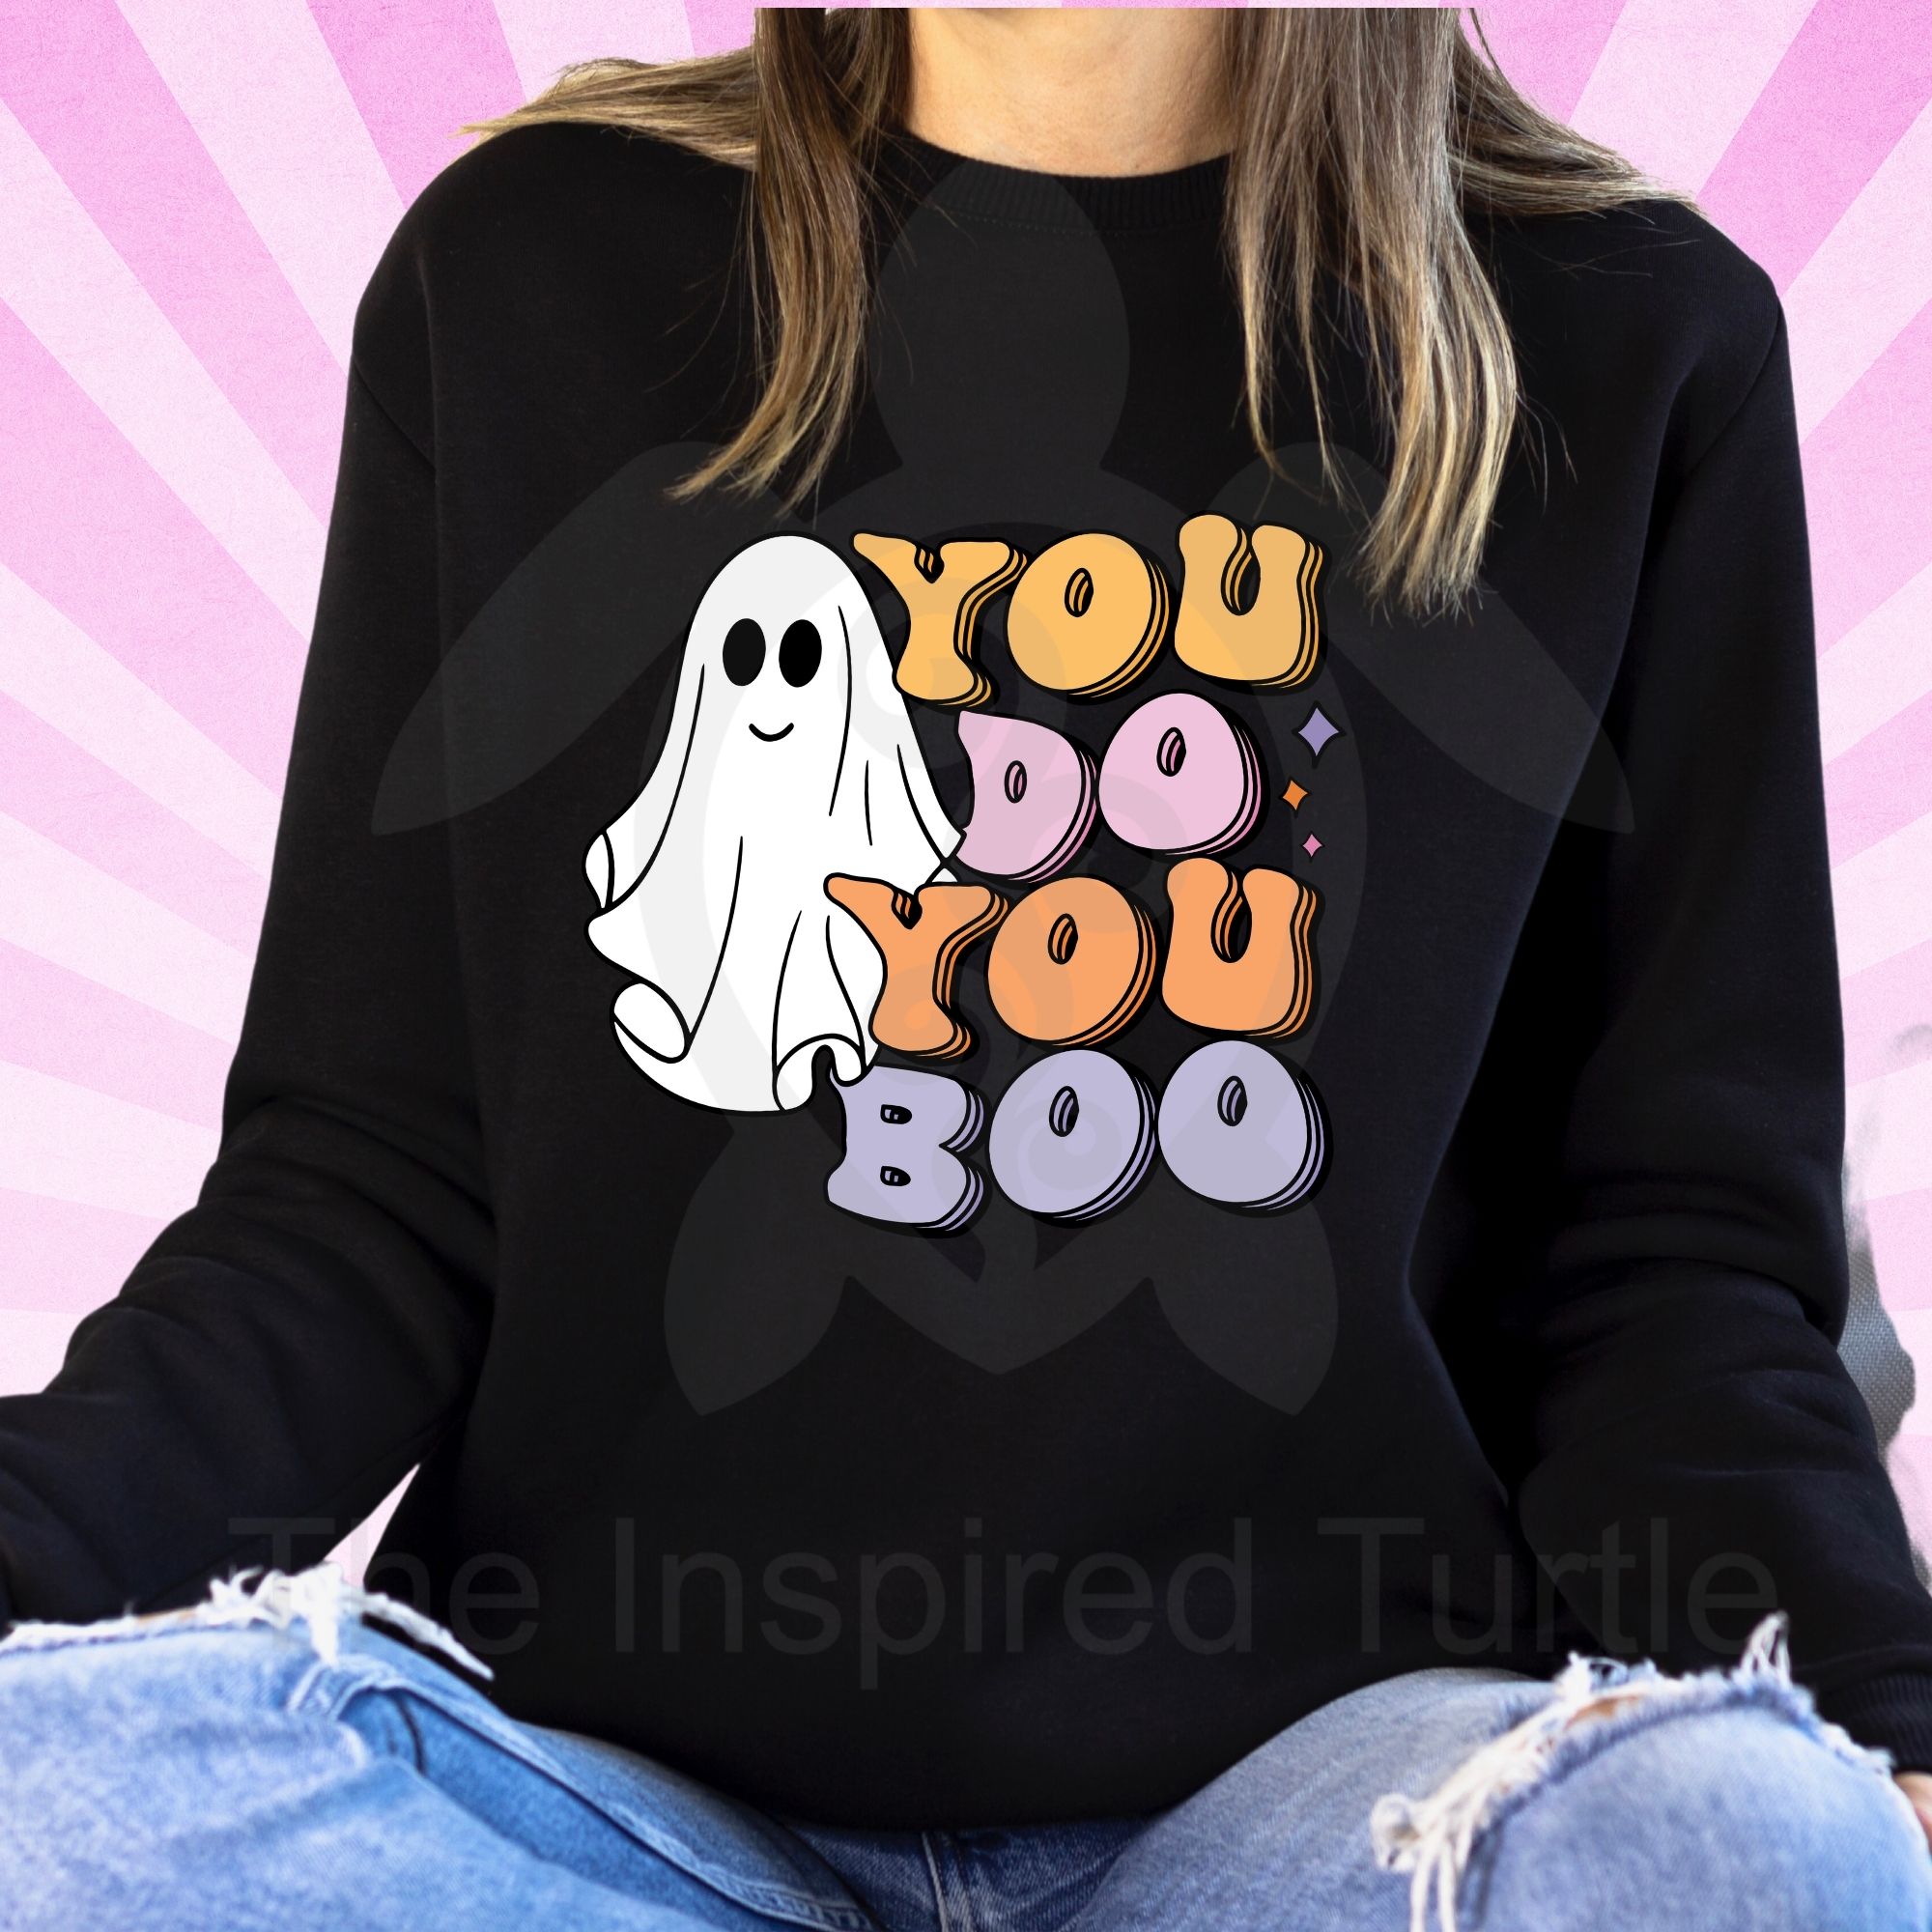 You do you BOO- Sweatshirt